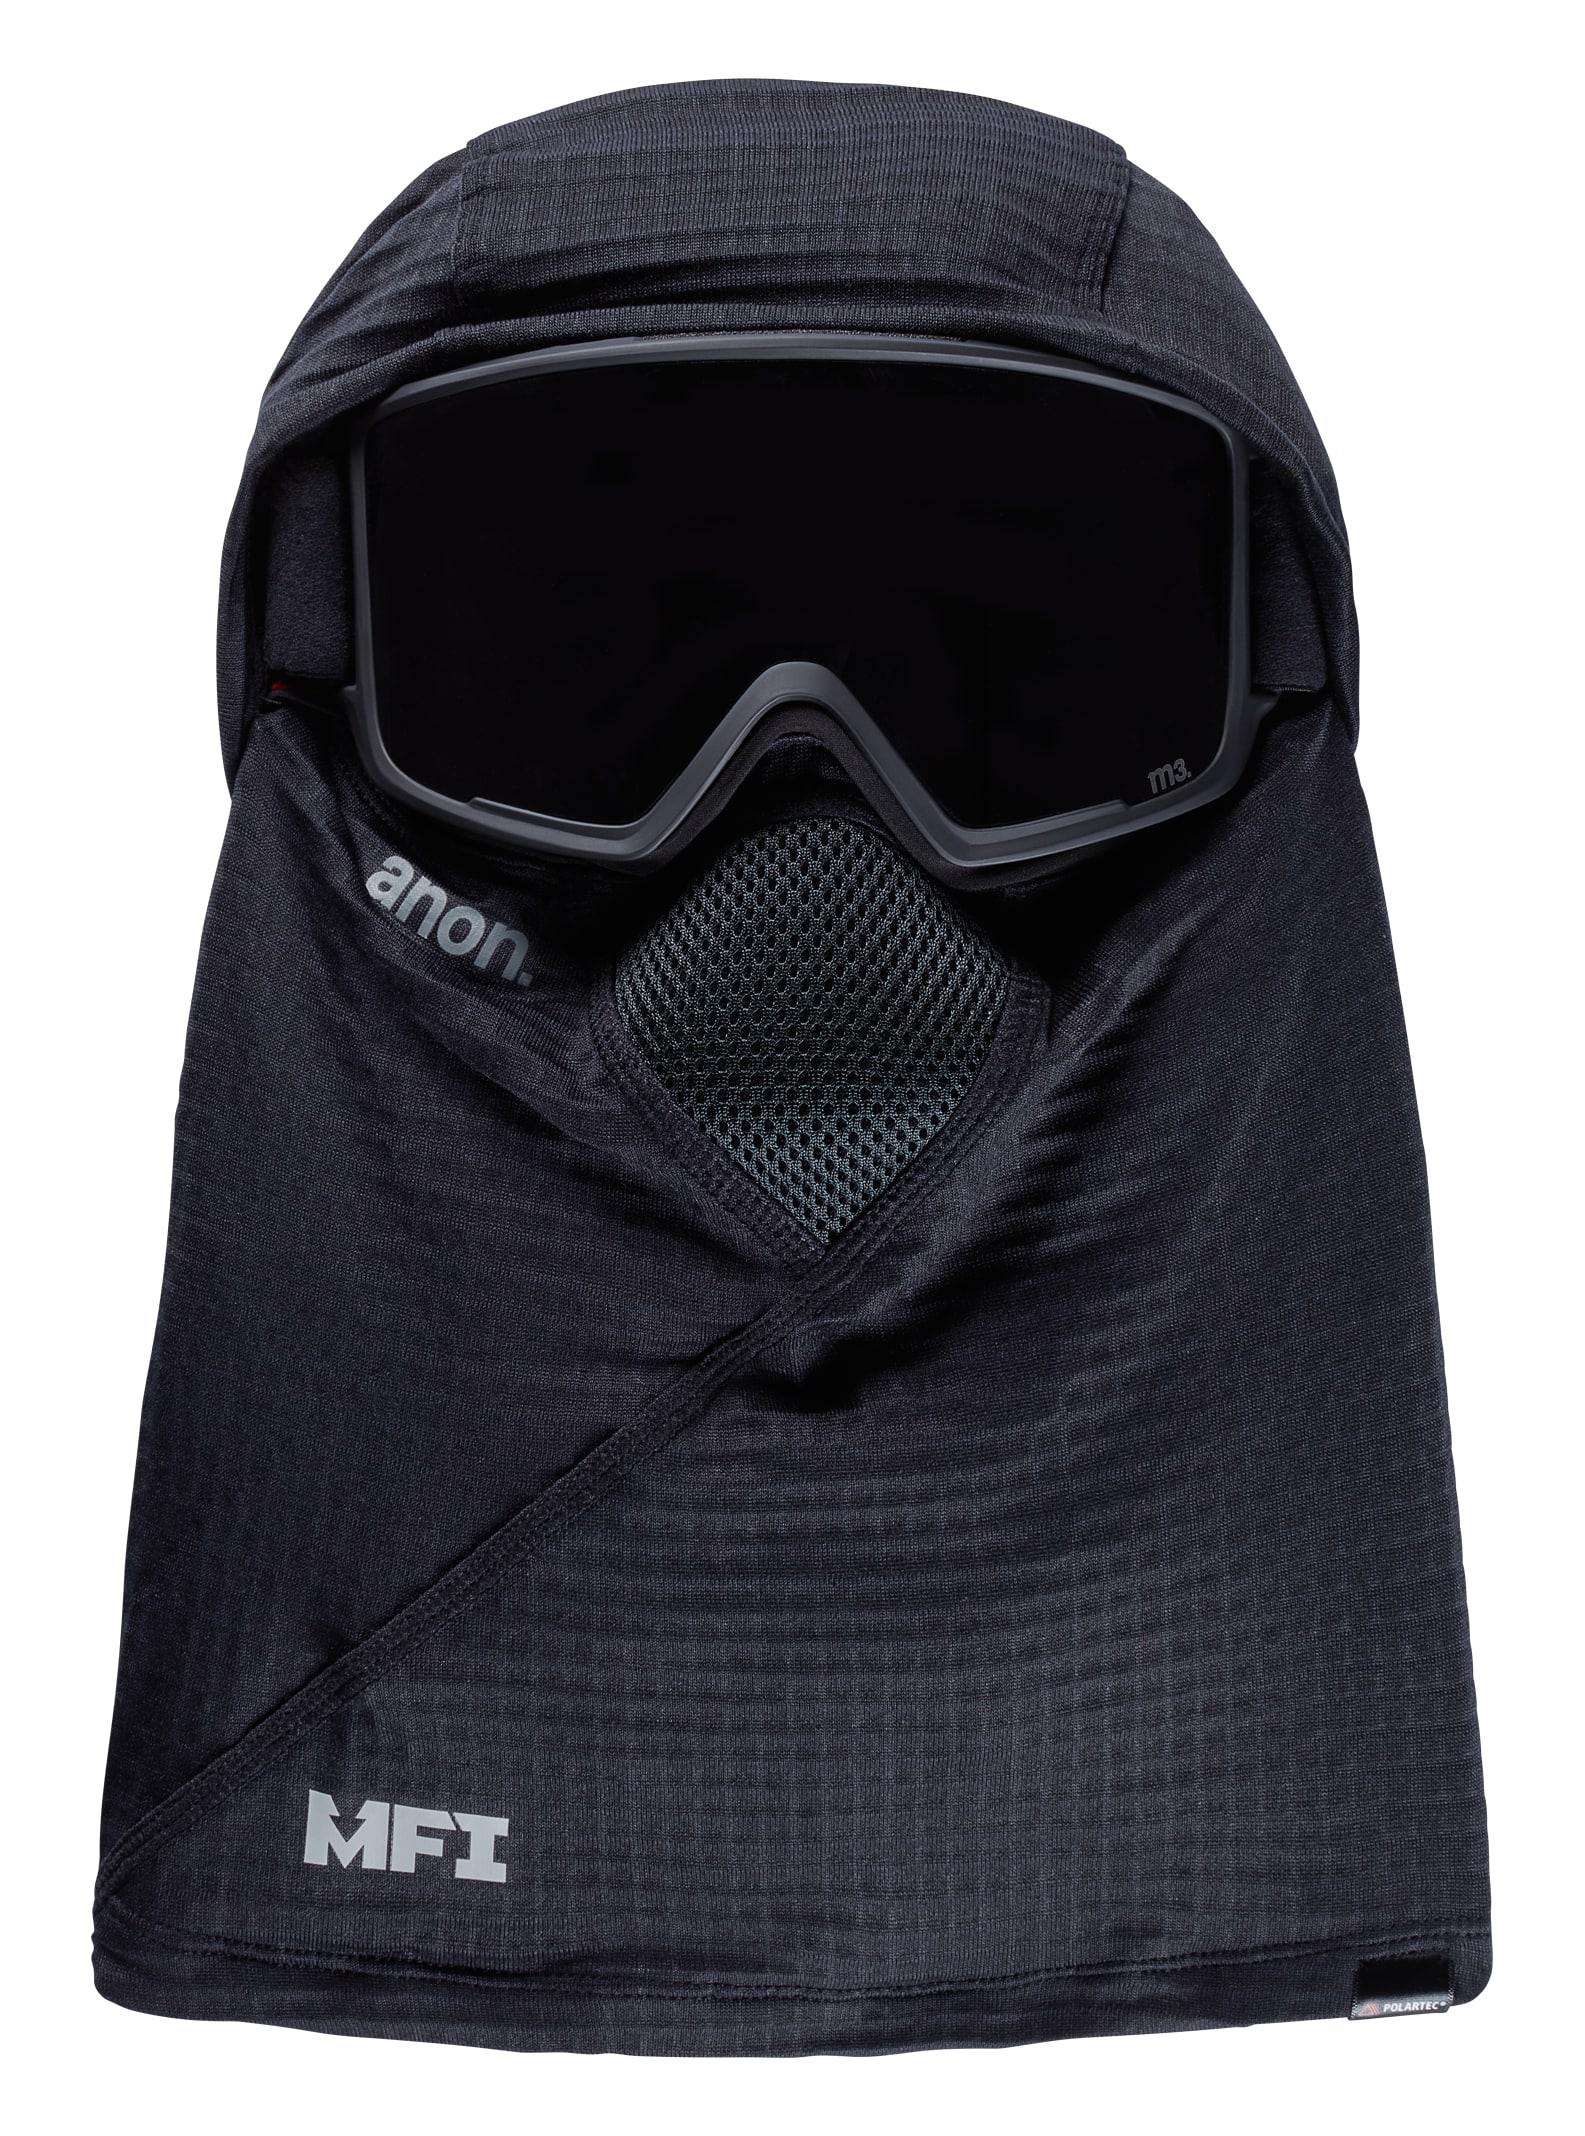 Snowboard and Ski MFI Face Masks | Burton Snowboards US